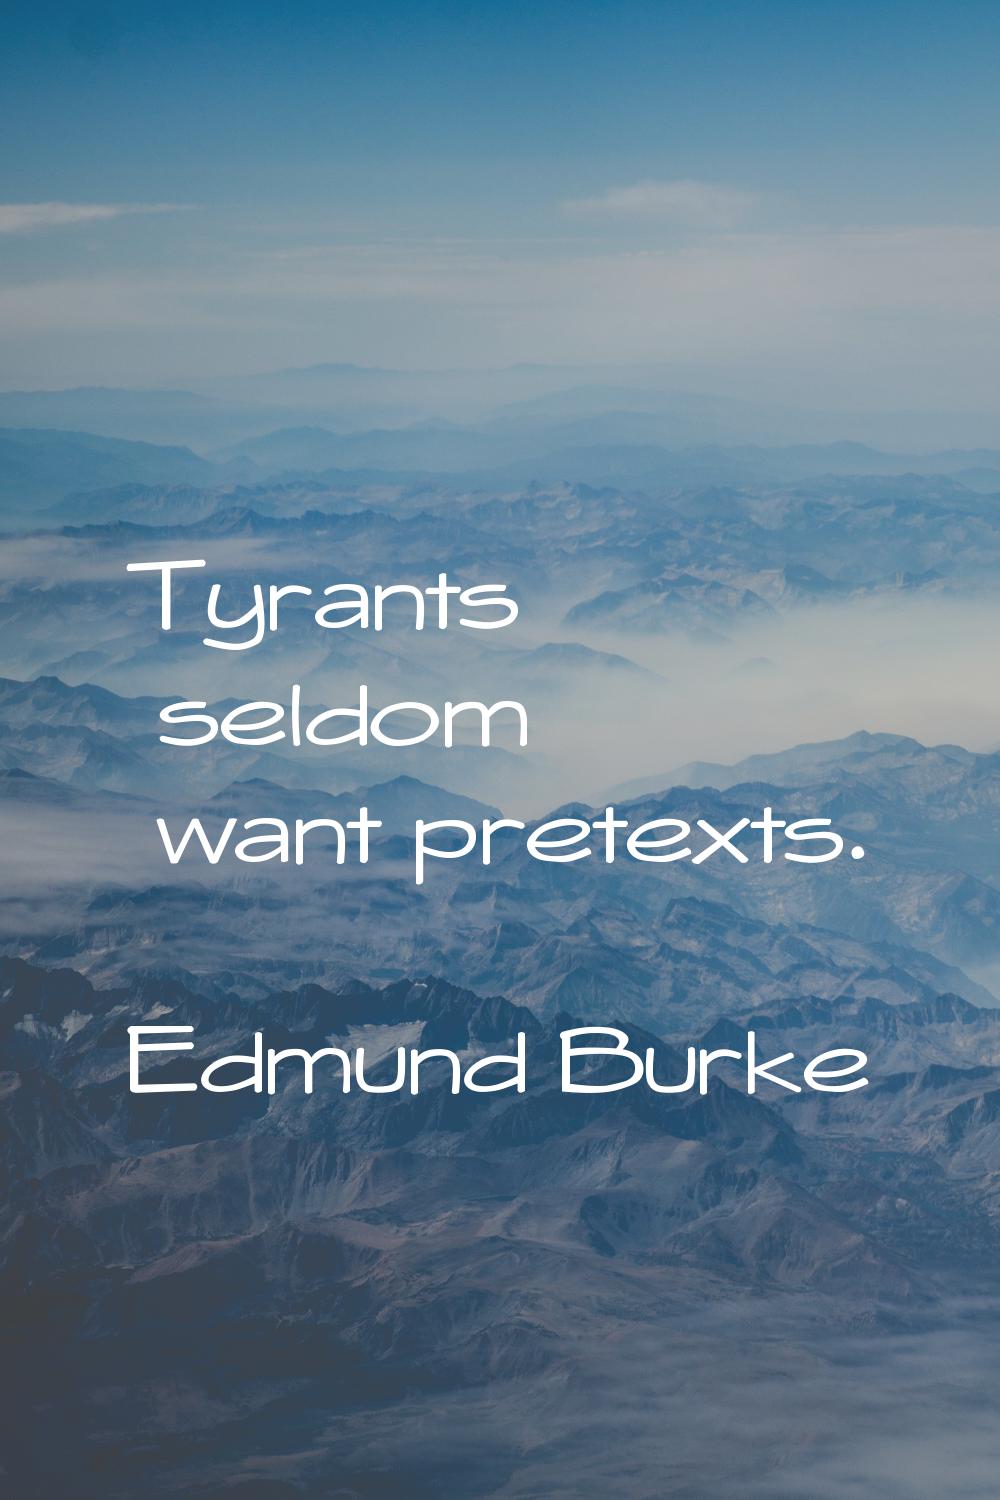 Tyrants seldom want pretexts.